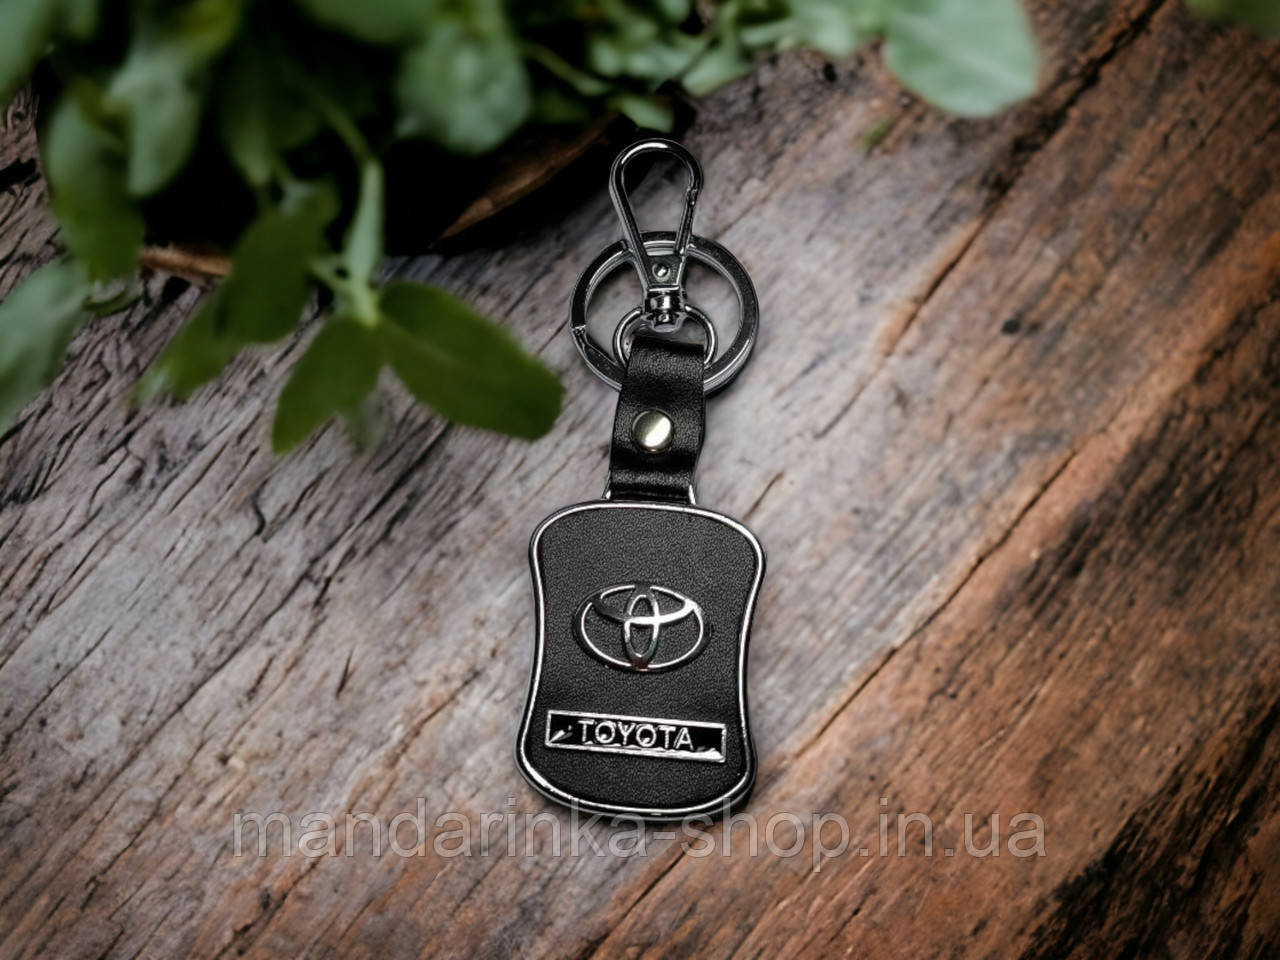 Брелок з логотипом авто Toyota, карабін та кільце, металевий зі вставками натуральної шкіри.